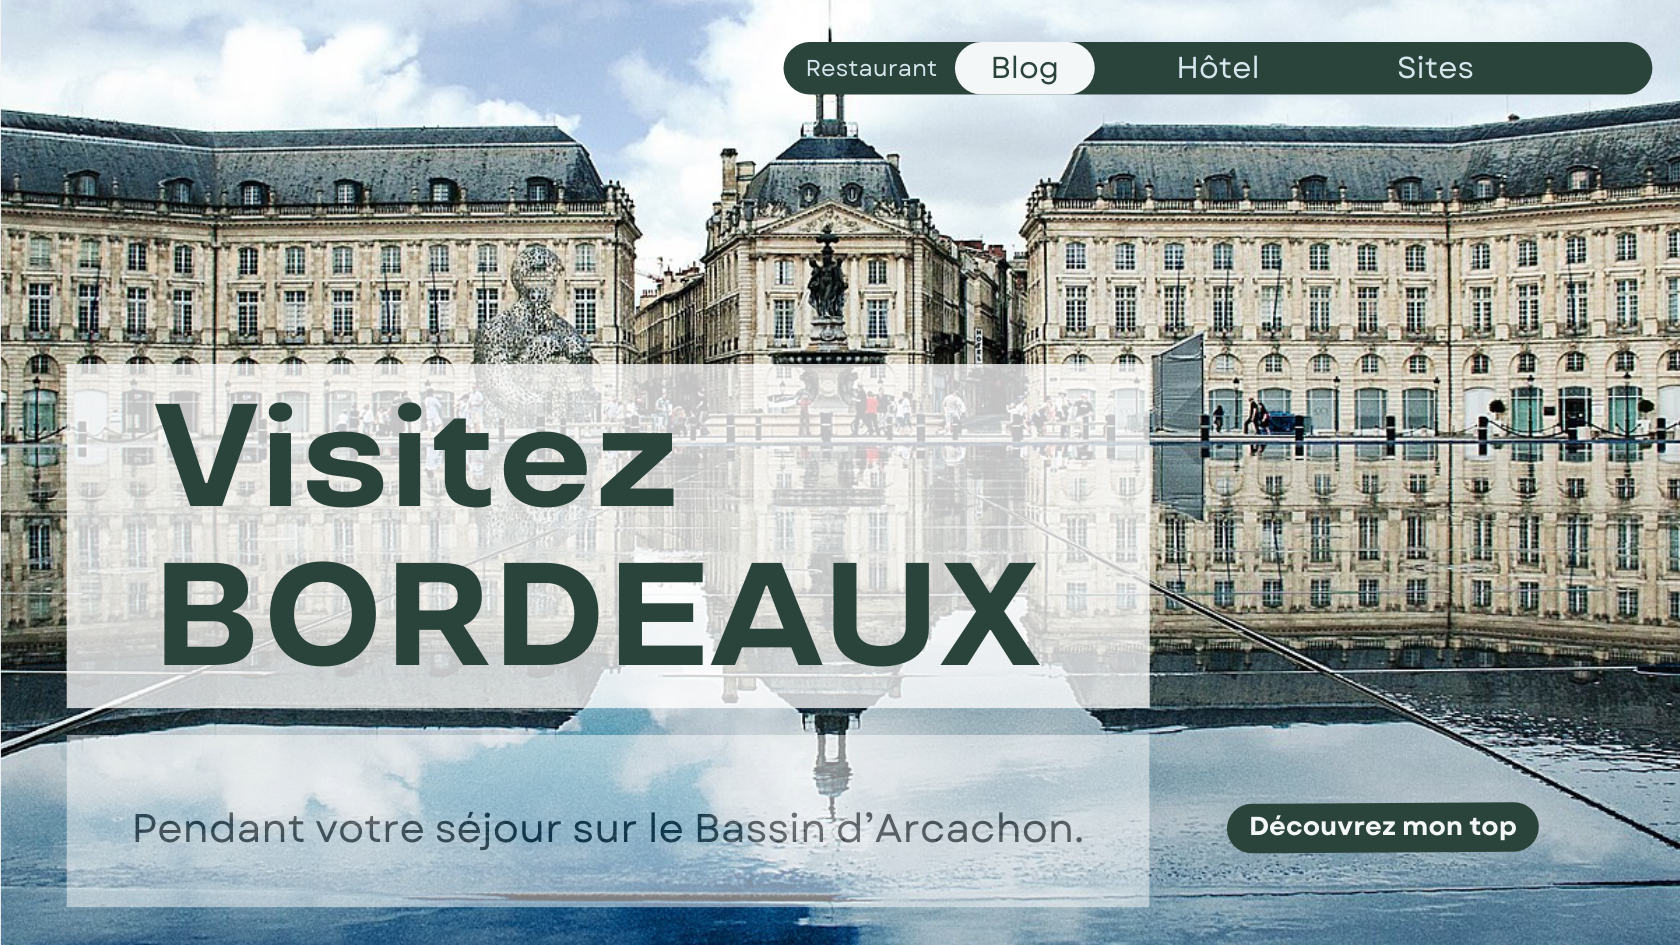 Passez à Bordeaux pendant votre séjour sur le Bassin d’Arcachon